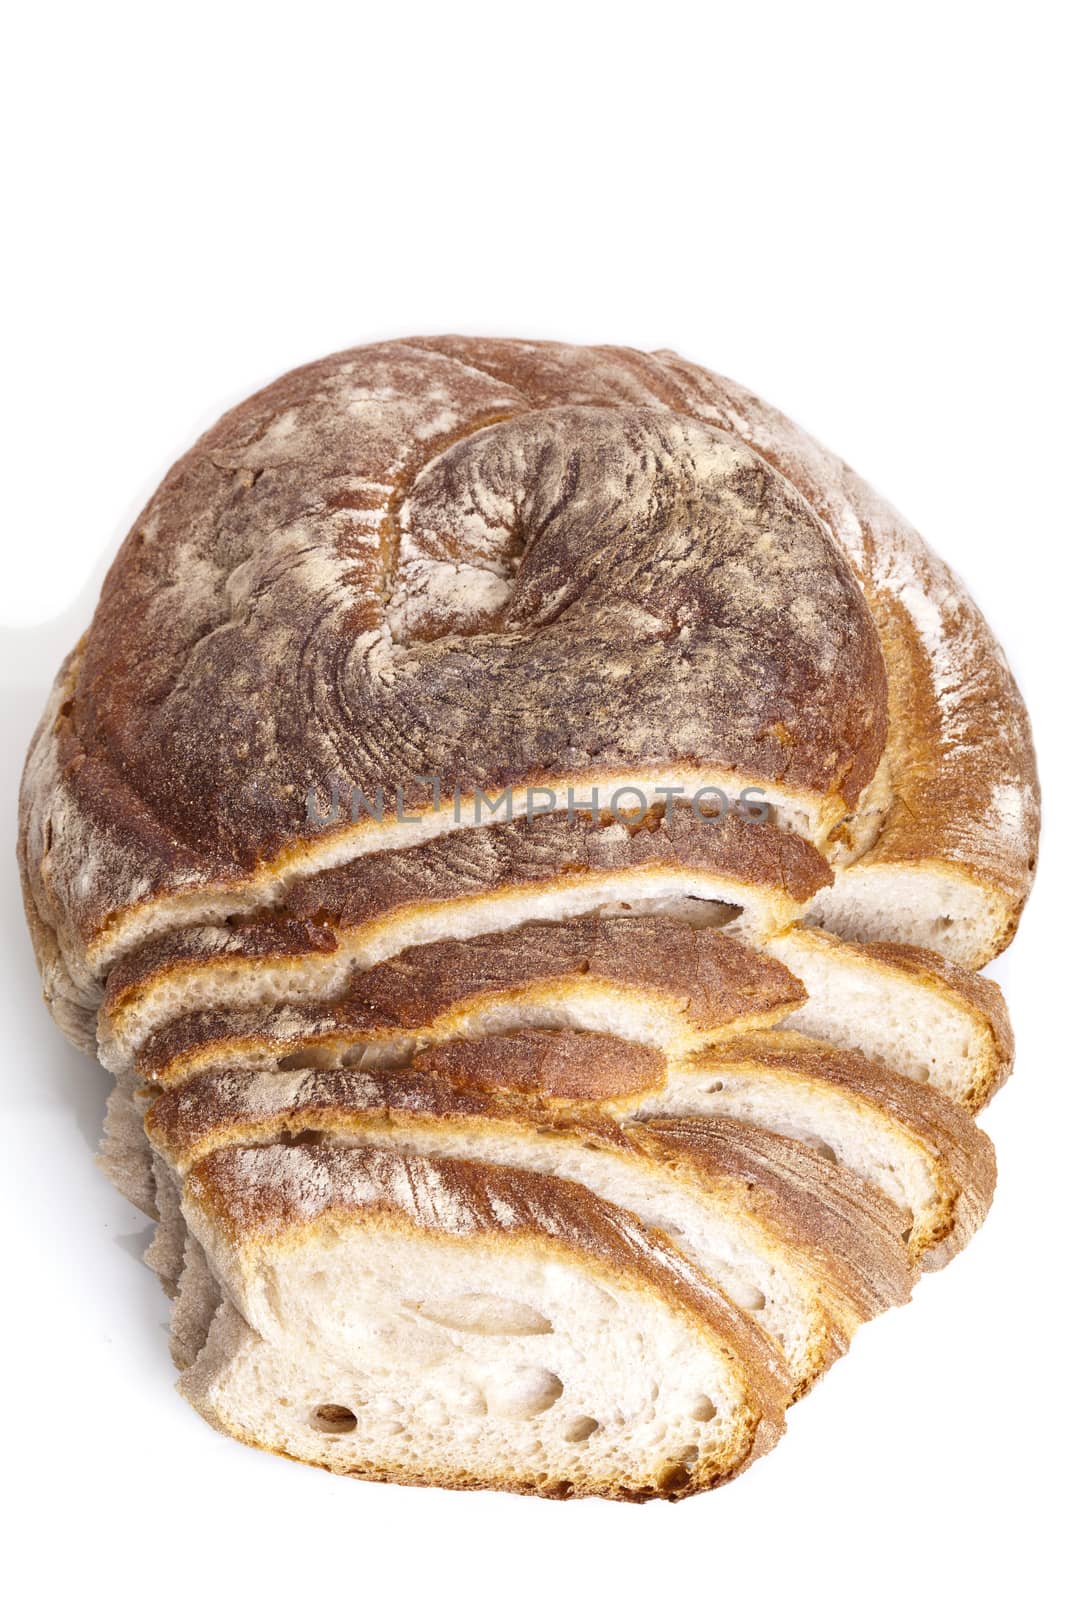 tasty fresh baked bread bun baguette natural food by juniart